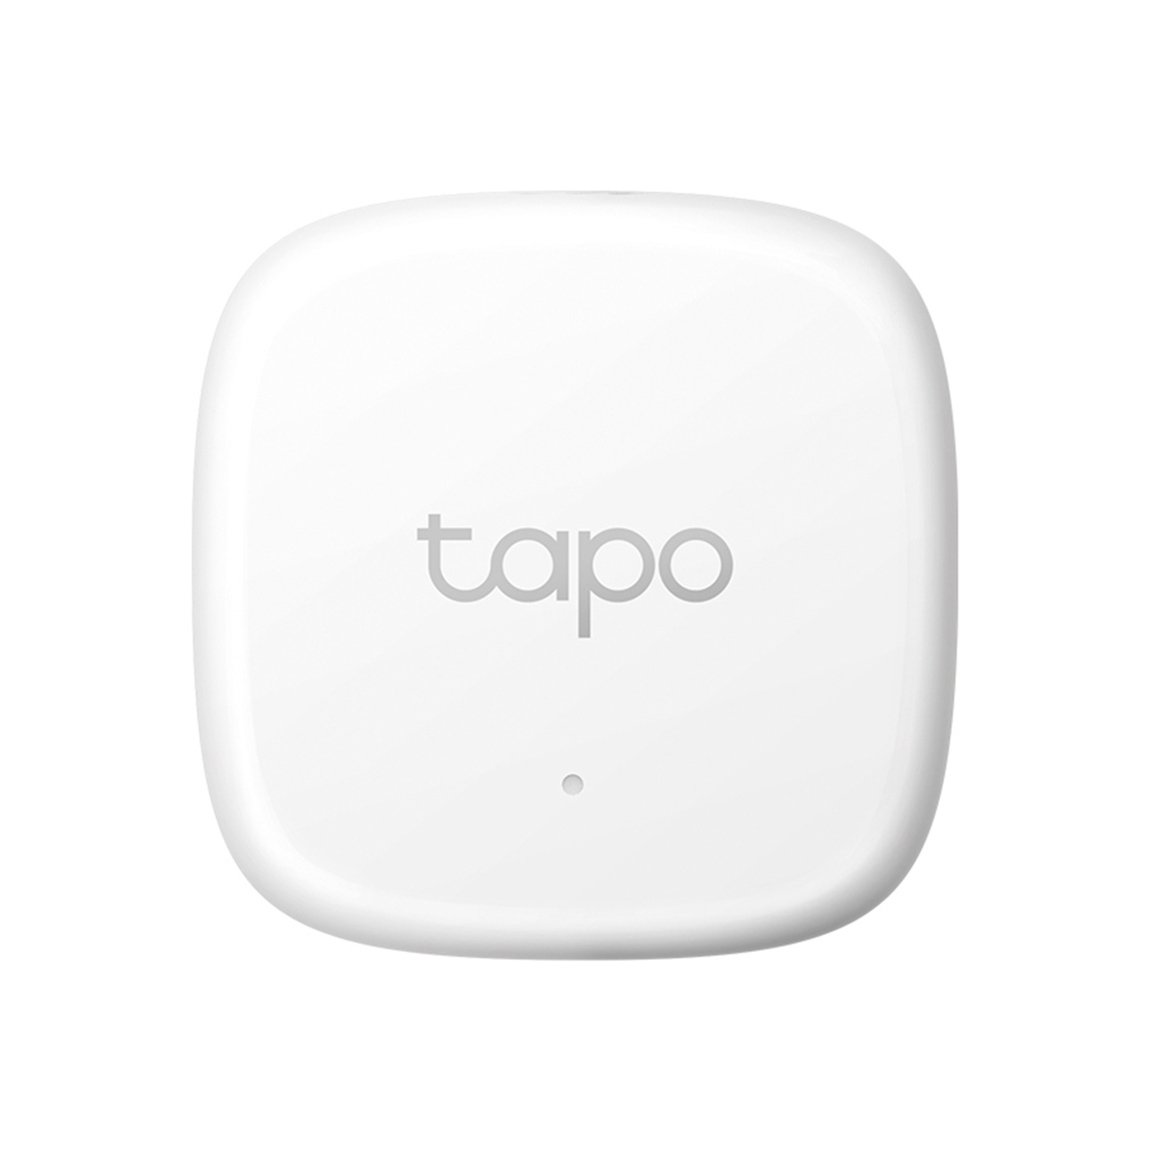 TP-Link Tapo T310 - Intelligenter Temperatur- & Luftfeuchtigkeitssensor - Weiß